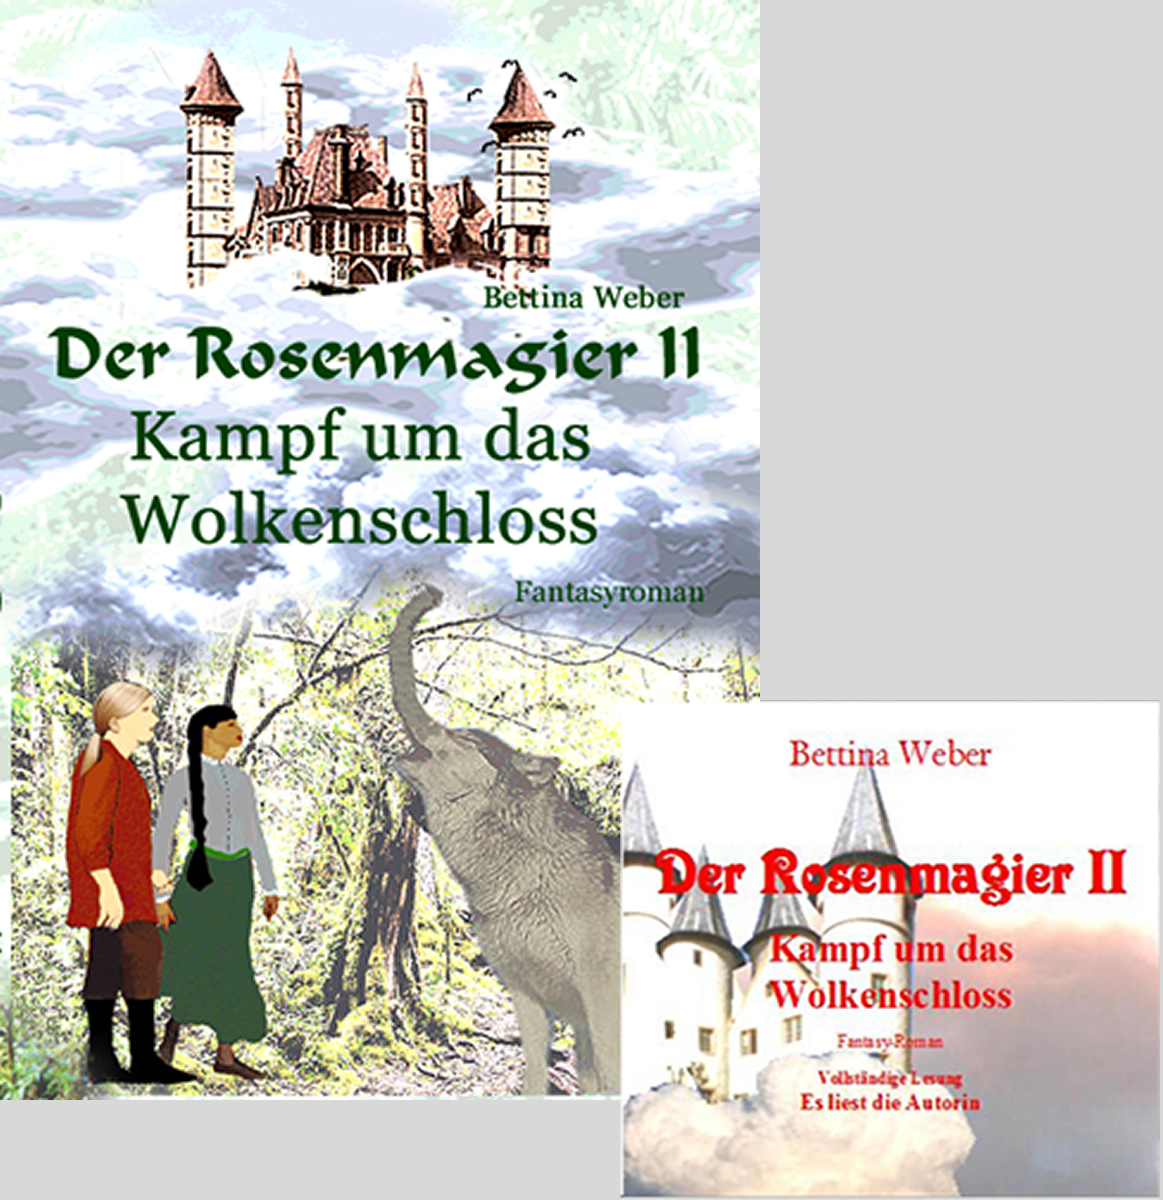 Der Rosenmagier II Kampf um das Wolkenschloss Buchcover und Hörbuch